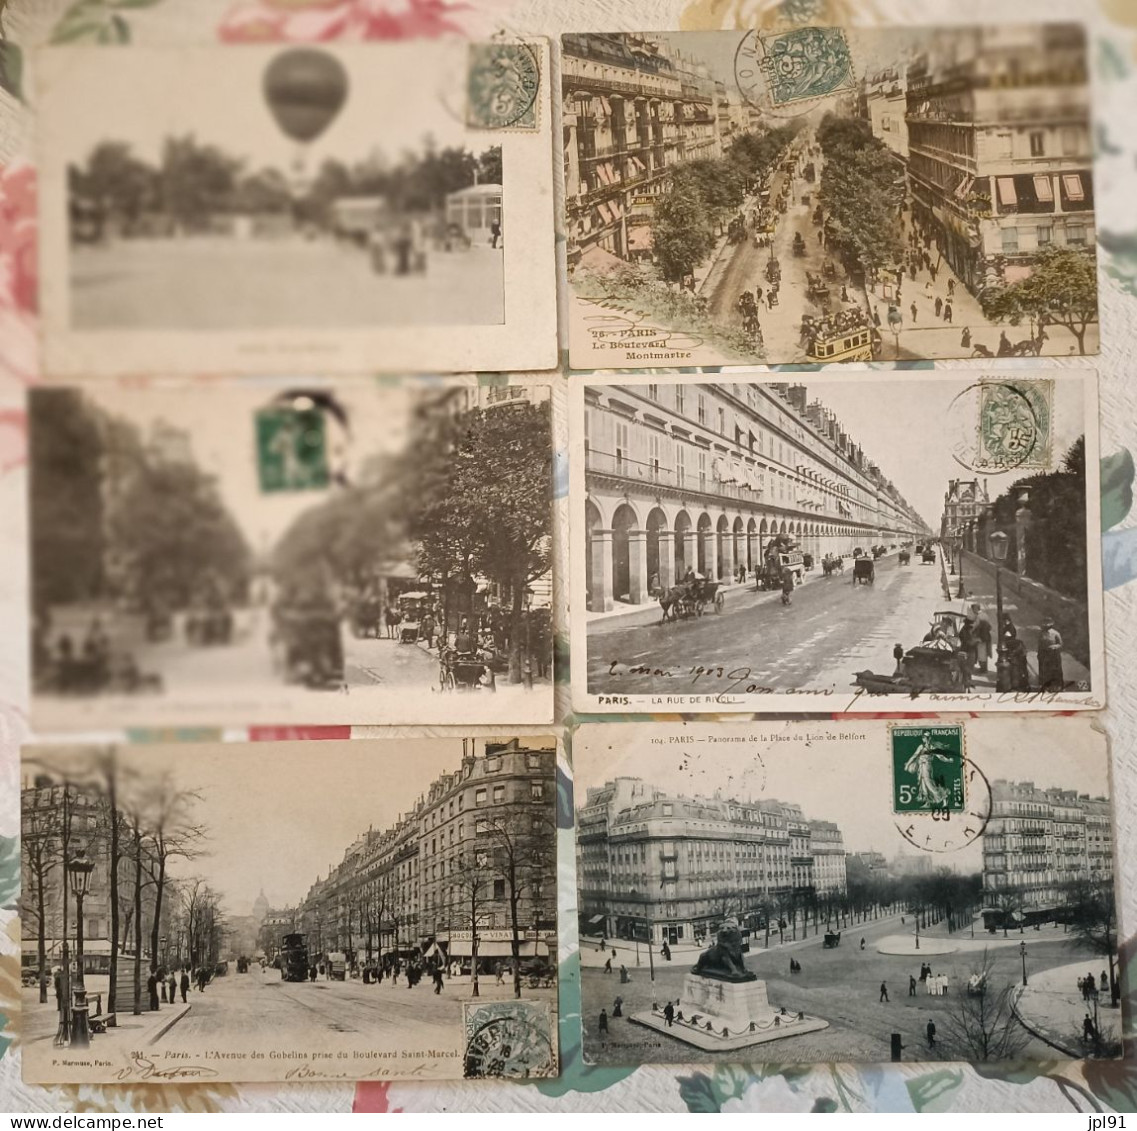 Lot d'environ 1300 Cartes des années 1910 de différentes régions de France. Toutes en très bon état